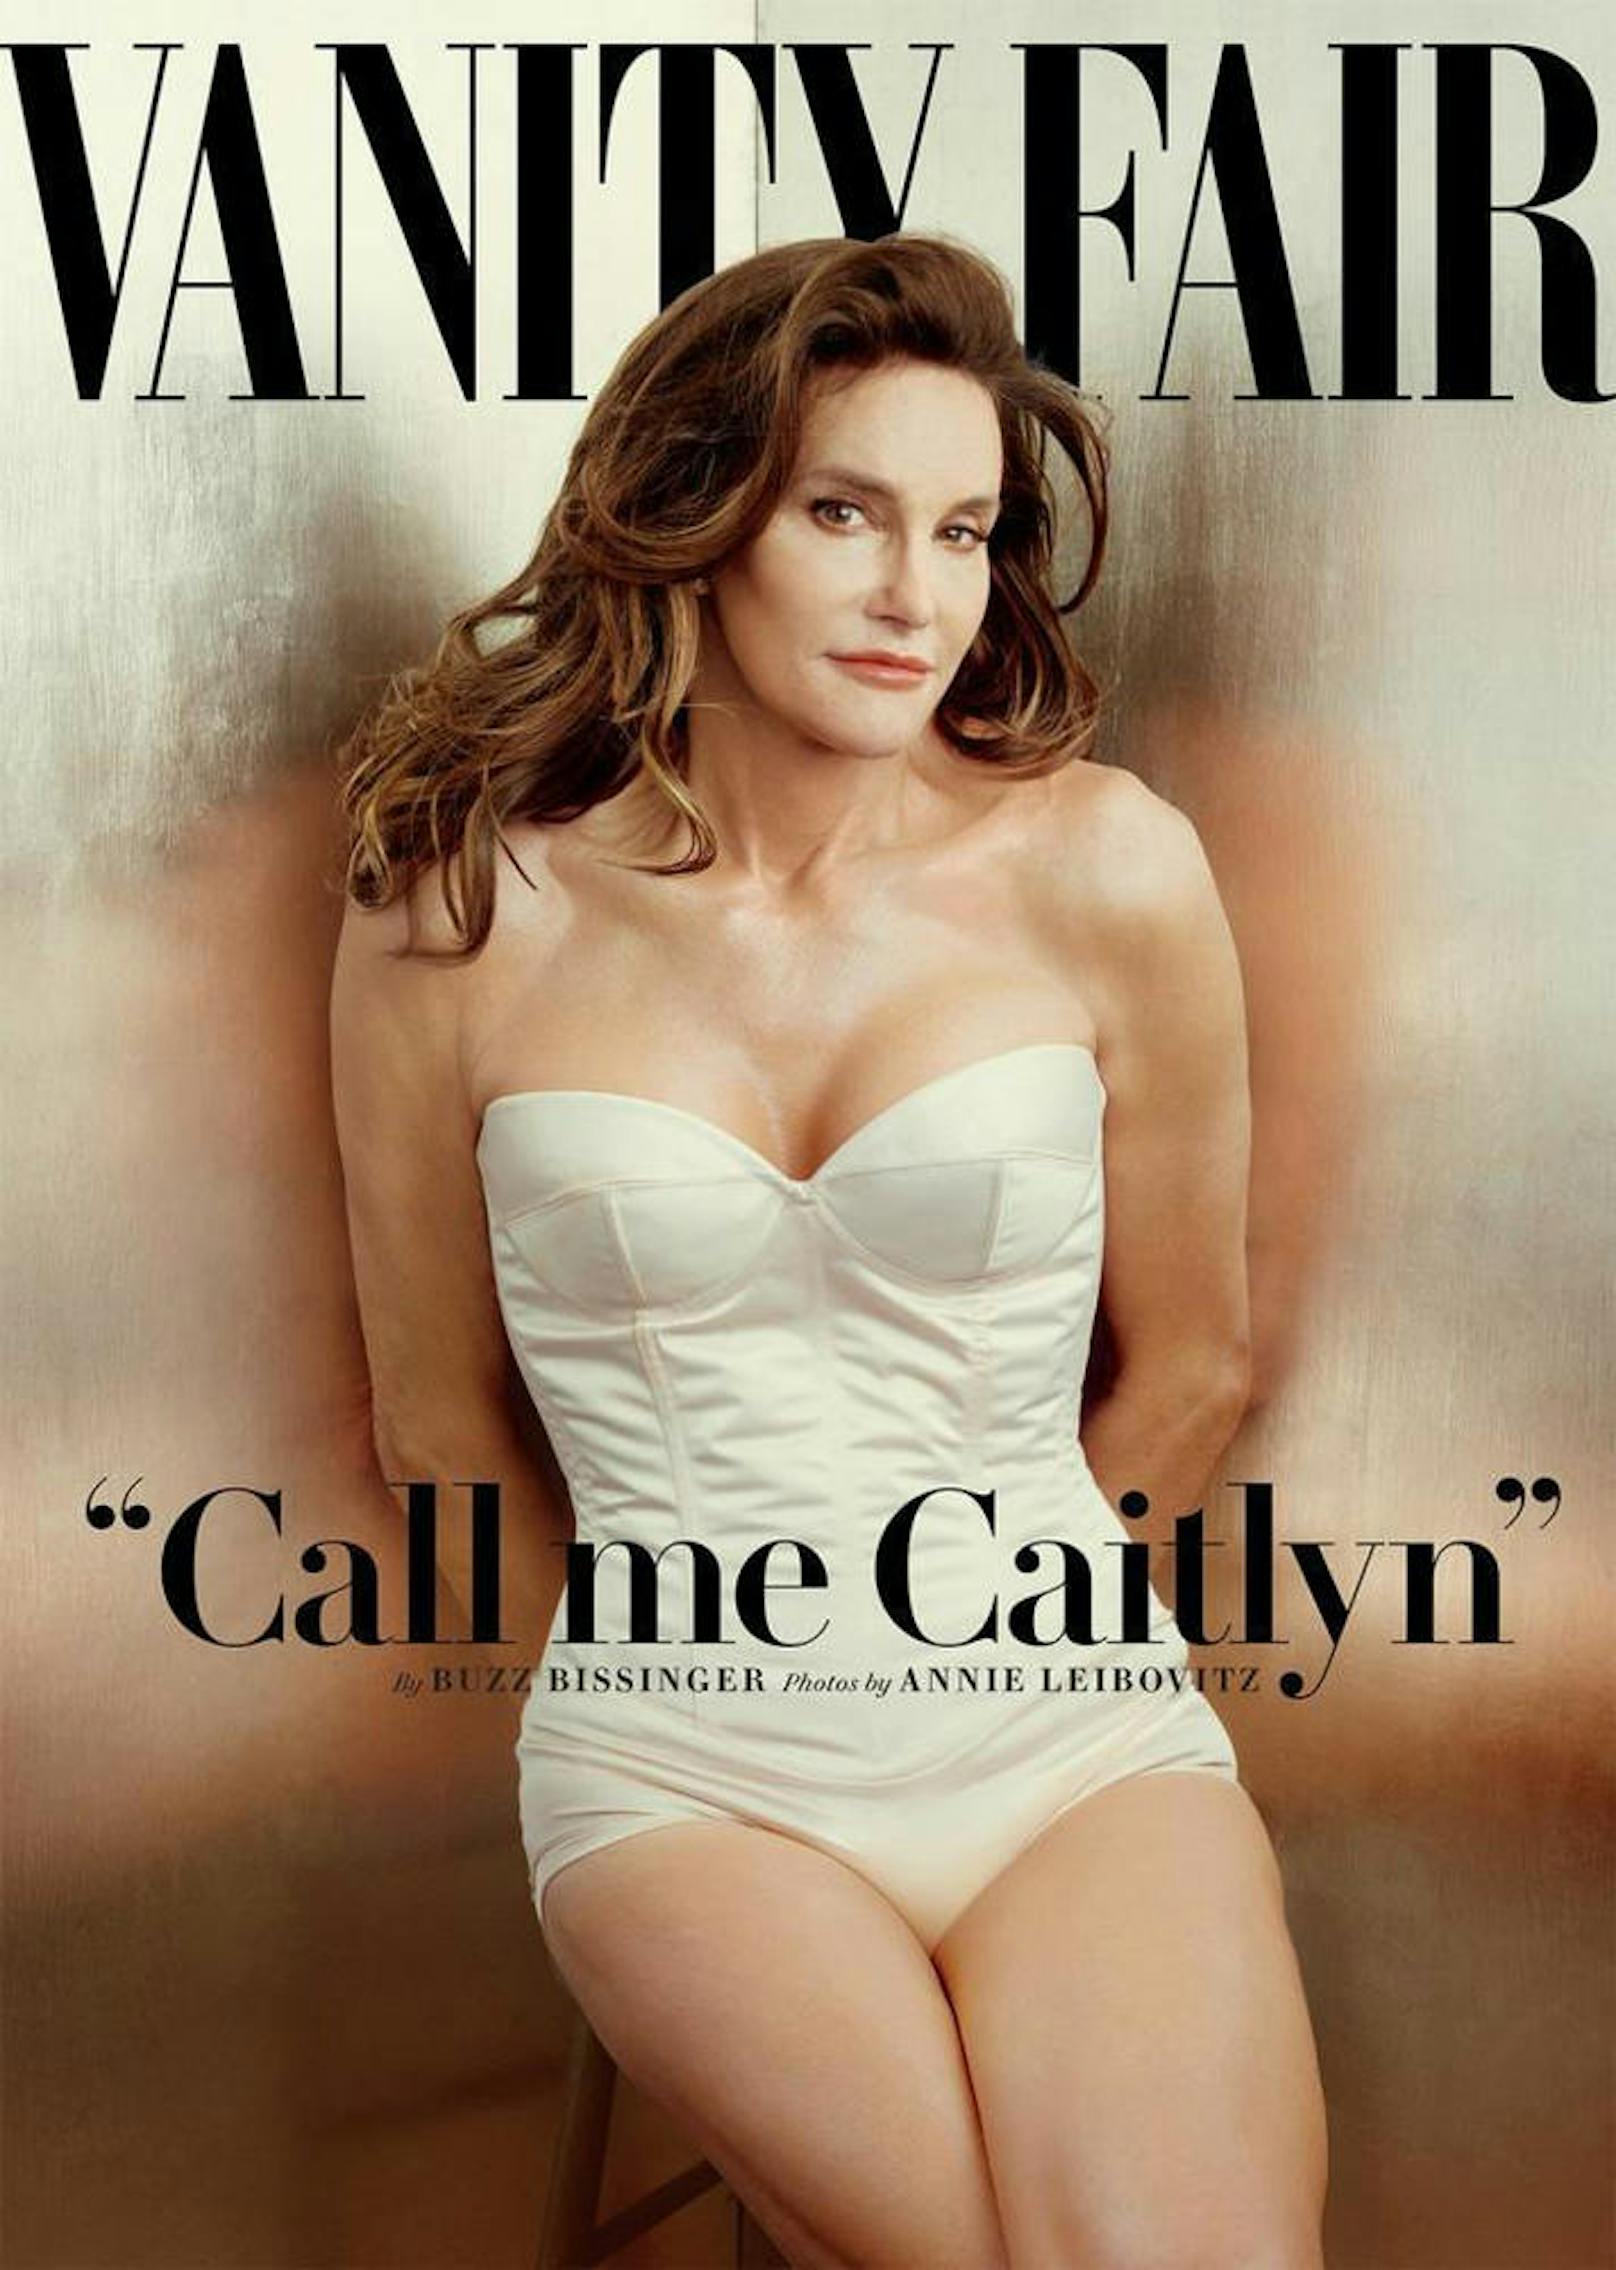 Nach ihrer Geschlechtsangleichung schaffte es Caitlyn Jenner auf das Cover von "Vanity Fair".